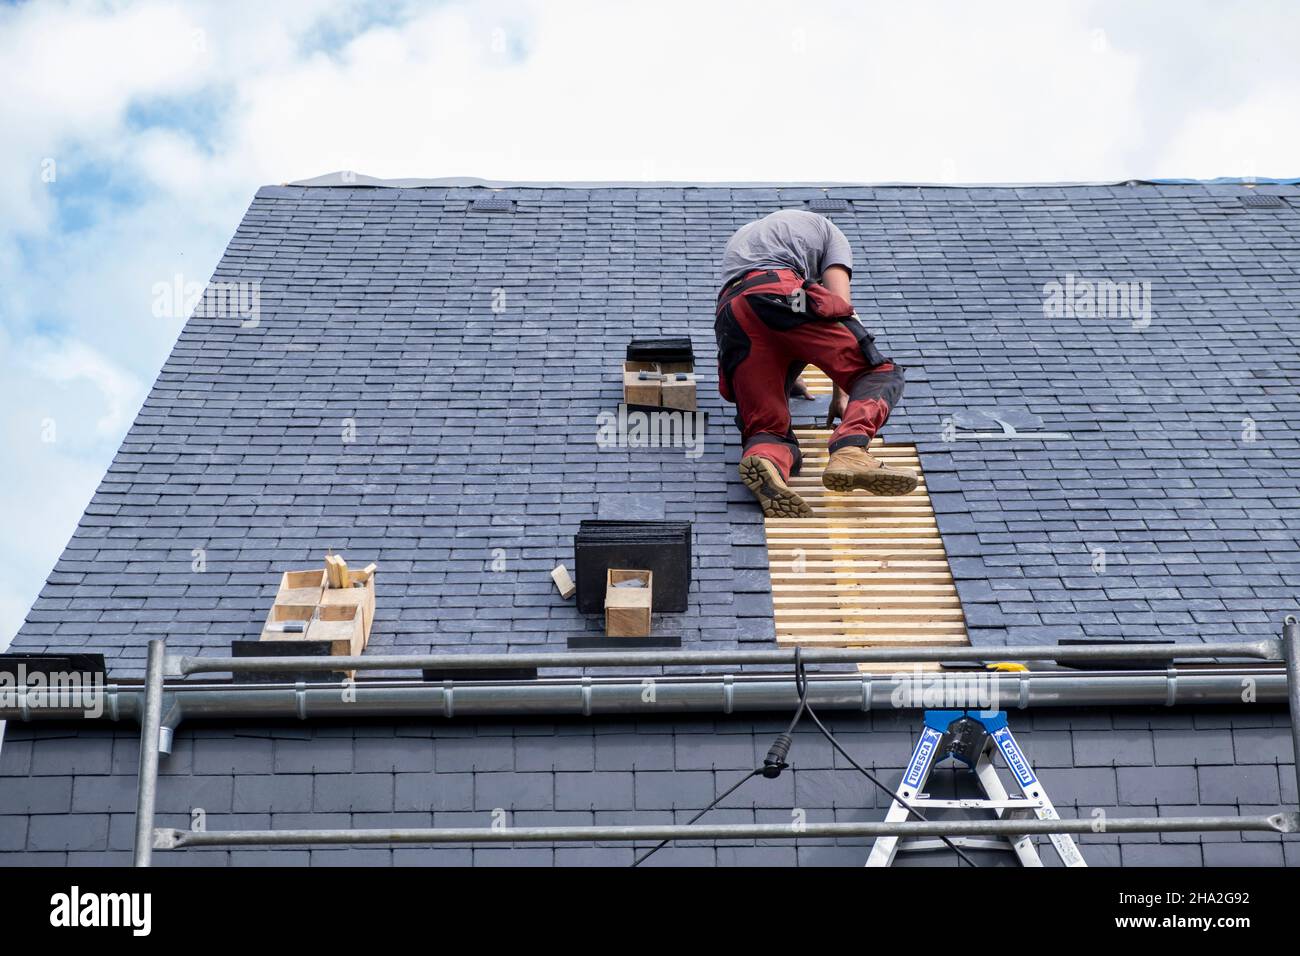 Travaux de rénovation, isolation de toit externe.Couvreur spécialisé dans l'isolation externe posant des plaques sur le toit d'une maison Banque D'Images